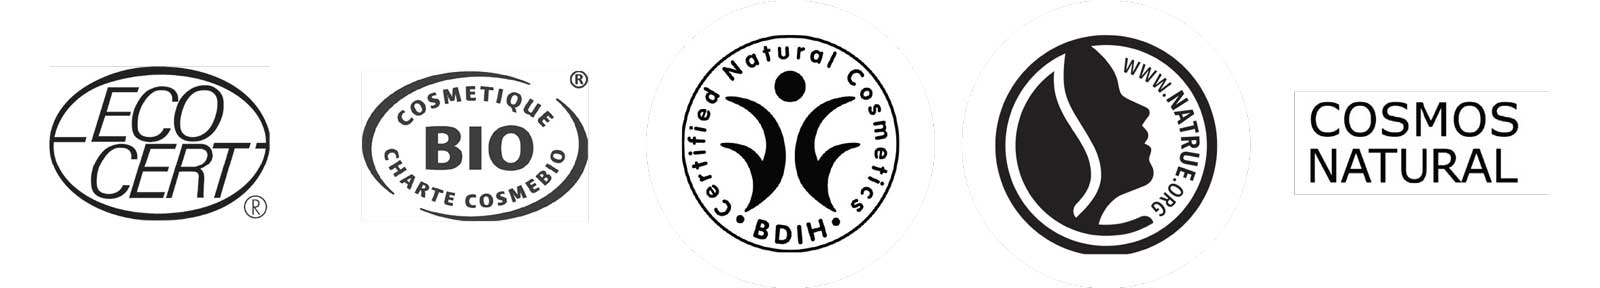 logos sellos de certificacion de cosmetica natural ecocert cosmetique bio BDIH cosmos natural